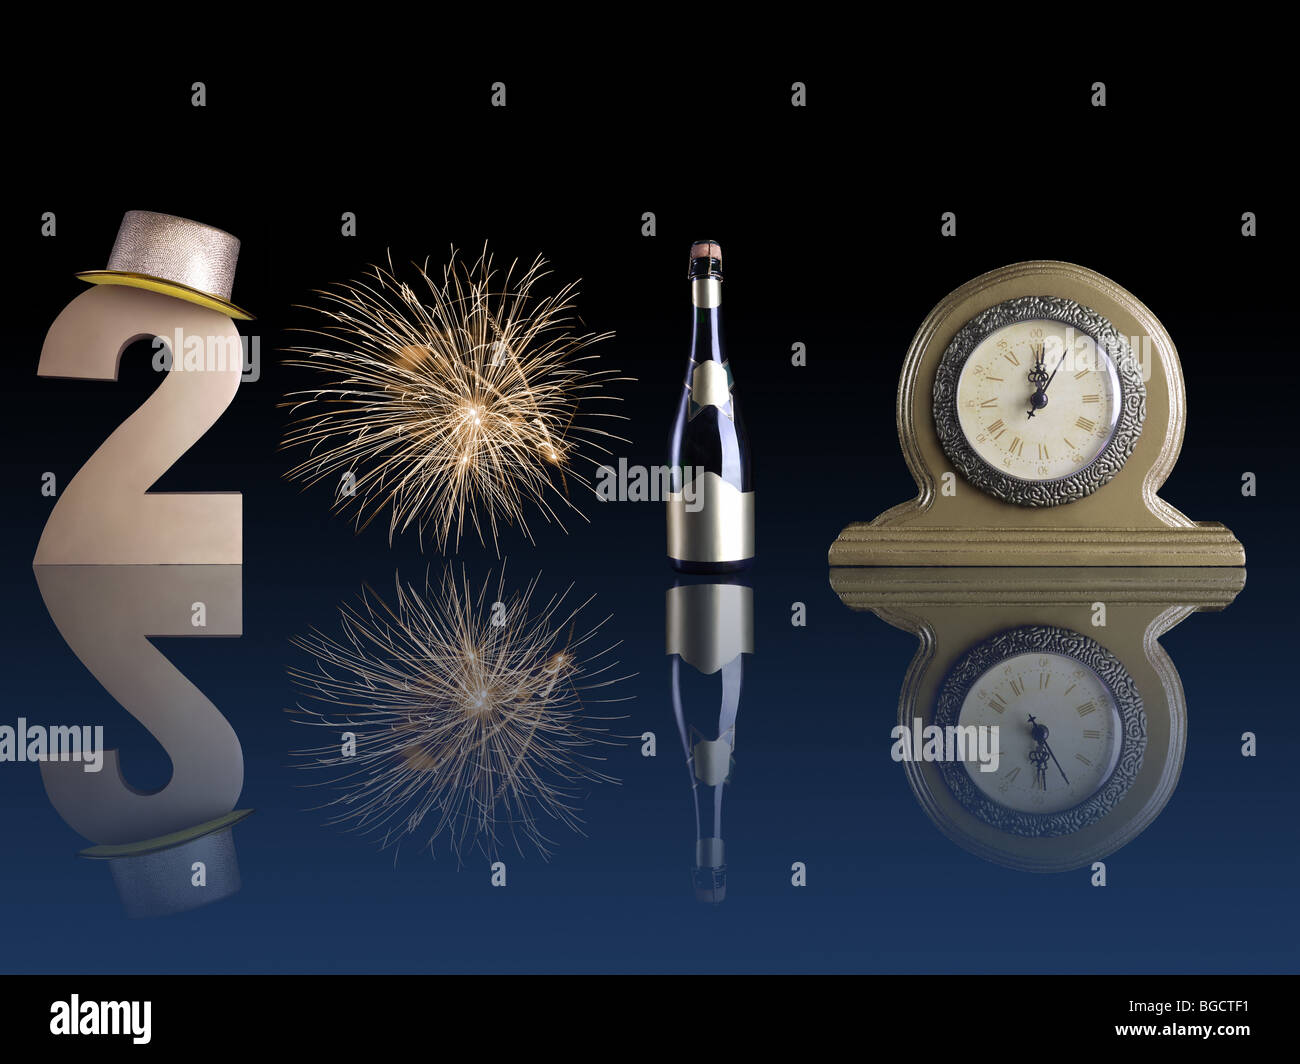 L'année 2010 composé de deux chiffres d'or, Fireworks burst, bouteille de champagne et une réflexion sur l'horloge de table surface bleu foncé Banque D'Images